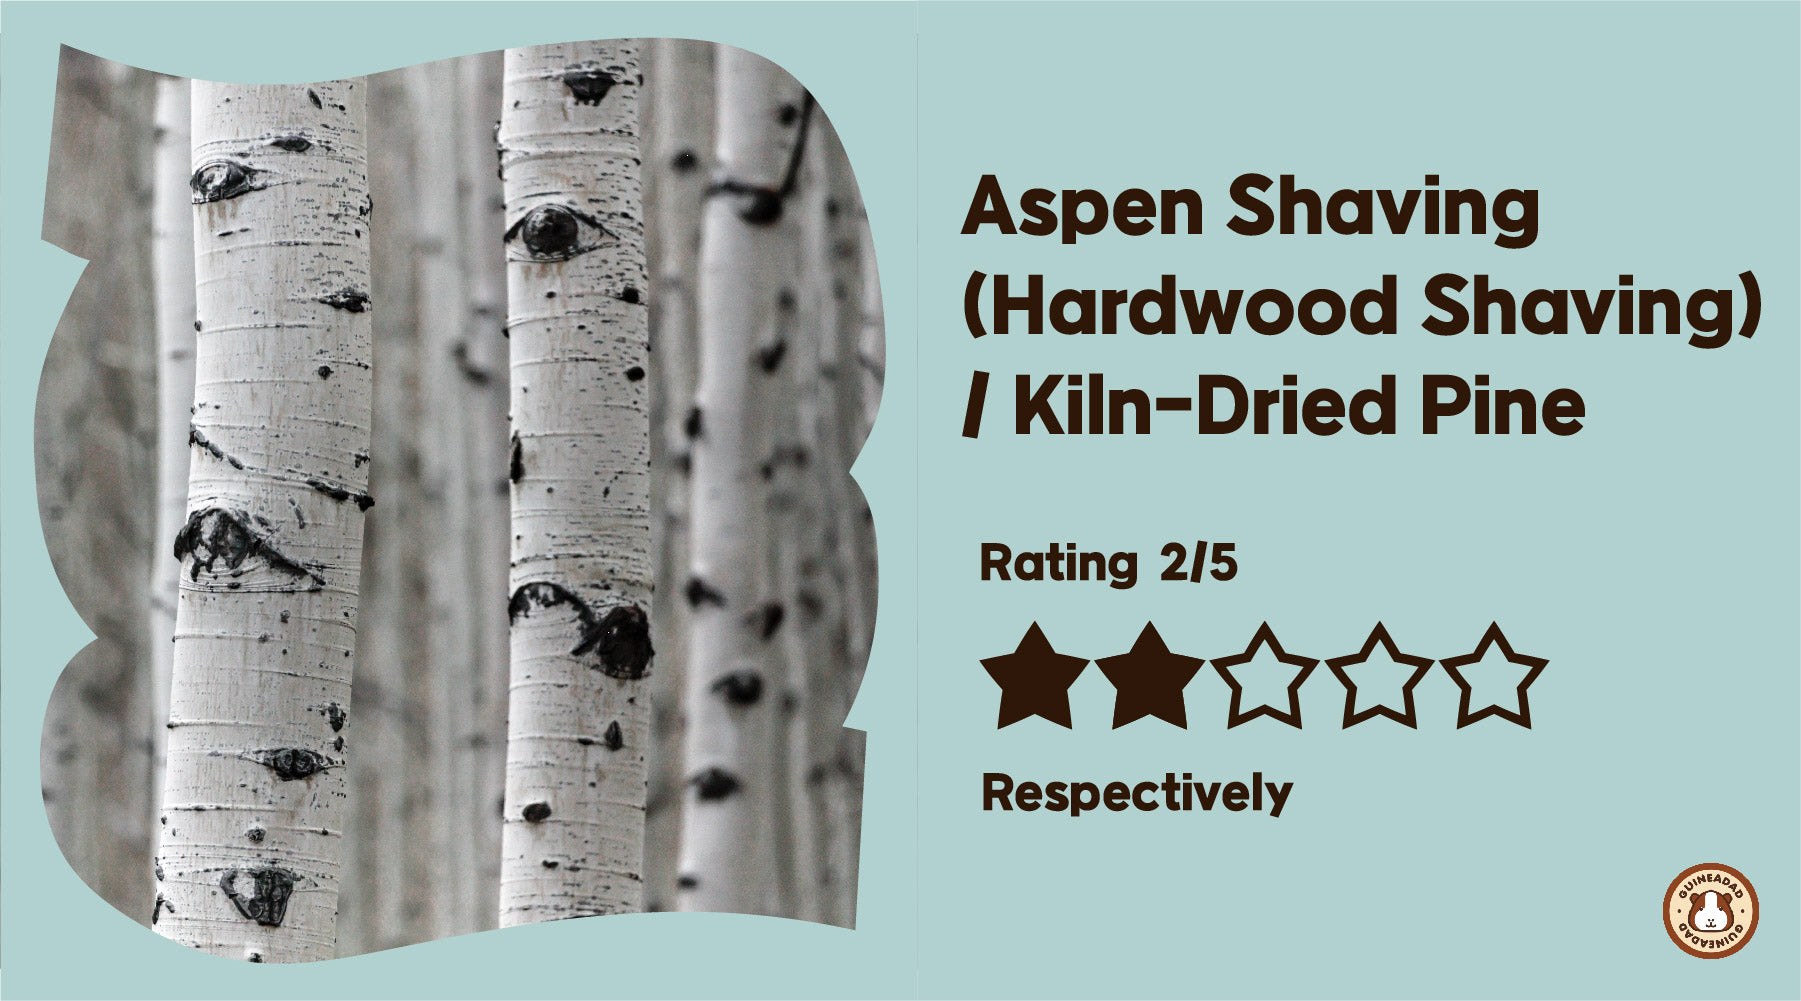 Aspen Shaving (Hardwood Shaving) / Kiln-Dried Pine